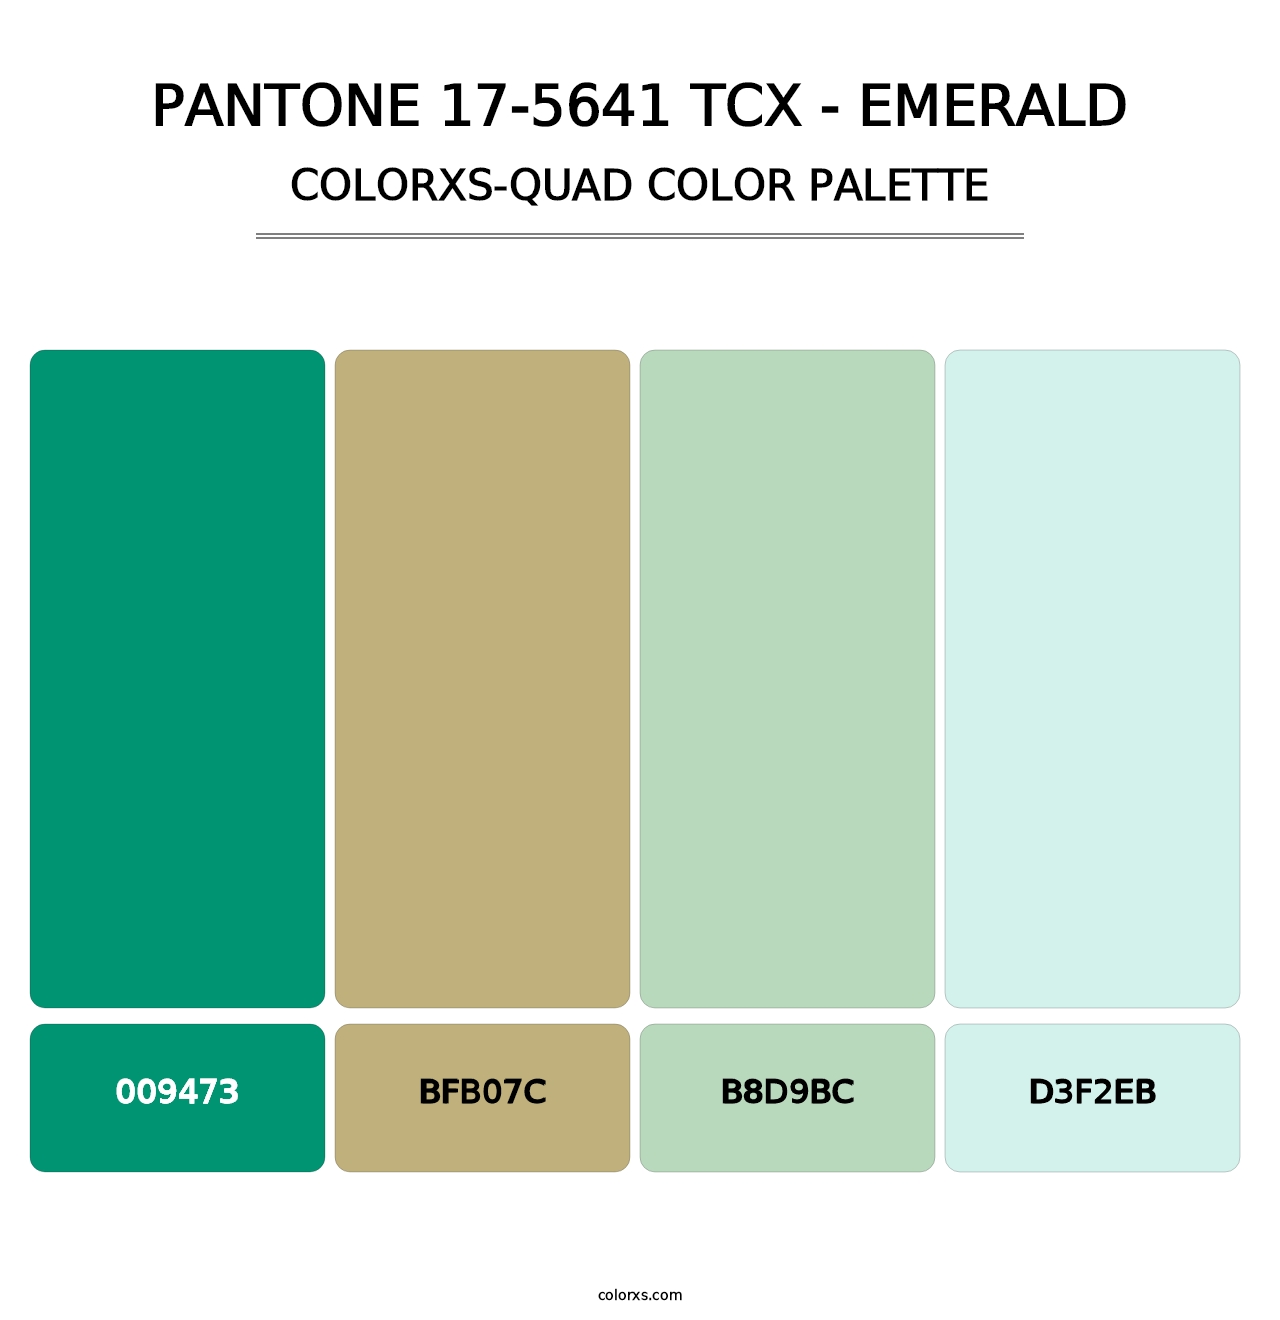 PANTONE 17-5641 TCX - Emerald - Colorxs Quad Palette